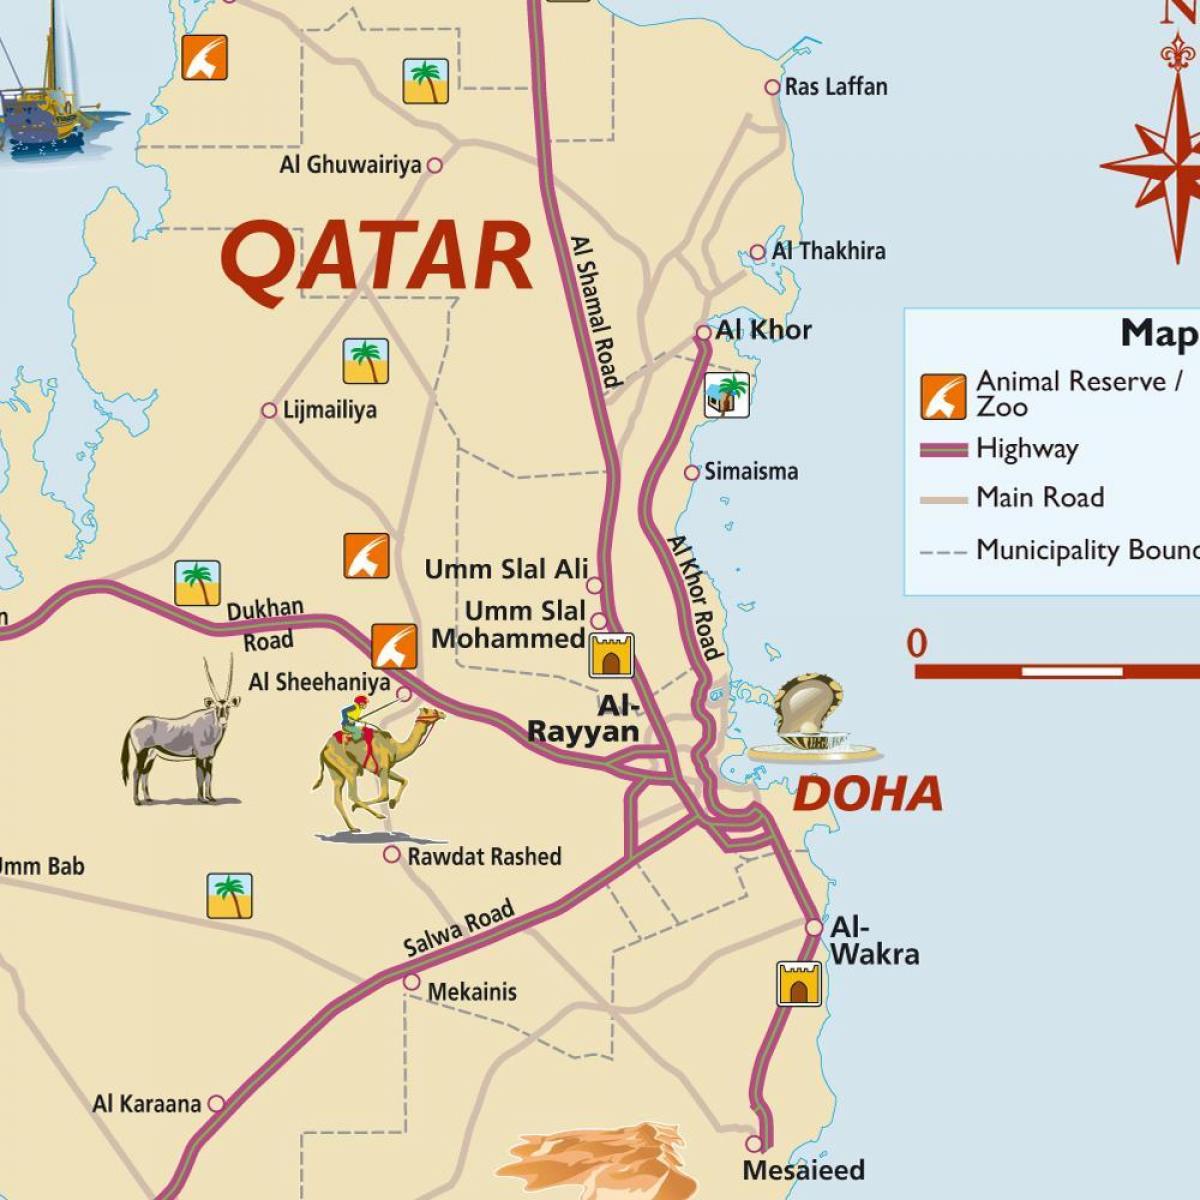 Bản đồ du lịch Qatar là một trong những phương tiện hữu ích nhất để bạn có thể khám phá những địa điểm nổi tiếng tại đất nước này. Với sự trữ information thông tin chi tiết và bản đồ chính xác, bạn sẽ luôn tìm được con đường đúng để đến với những điểm đến hấp dẫn ở Qatar.